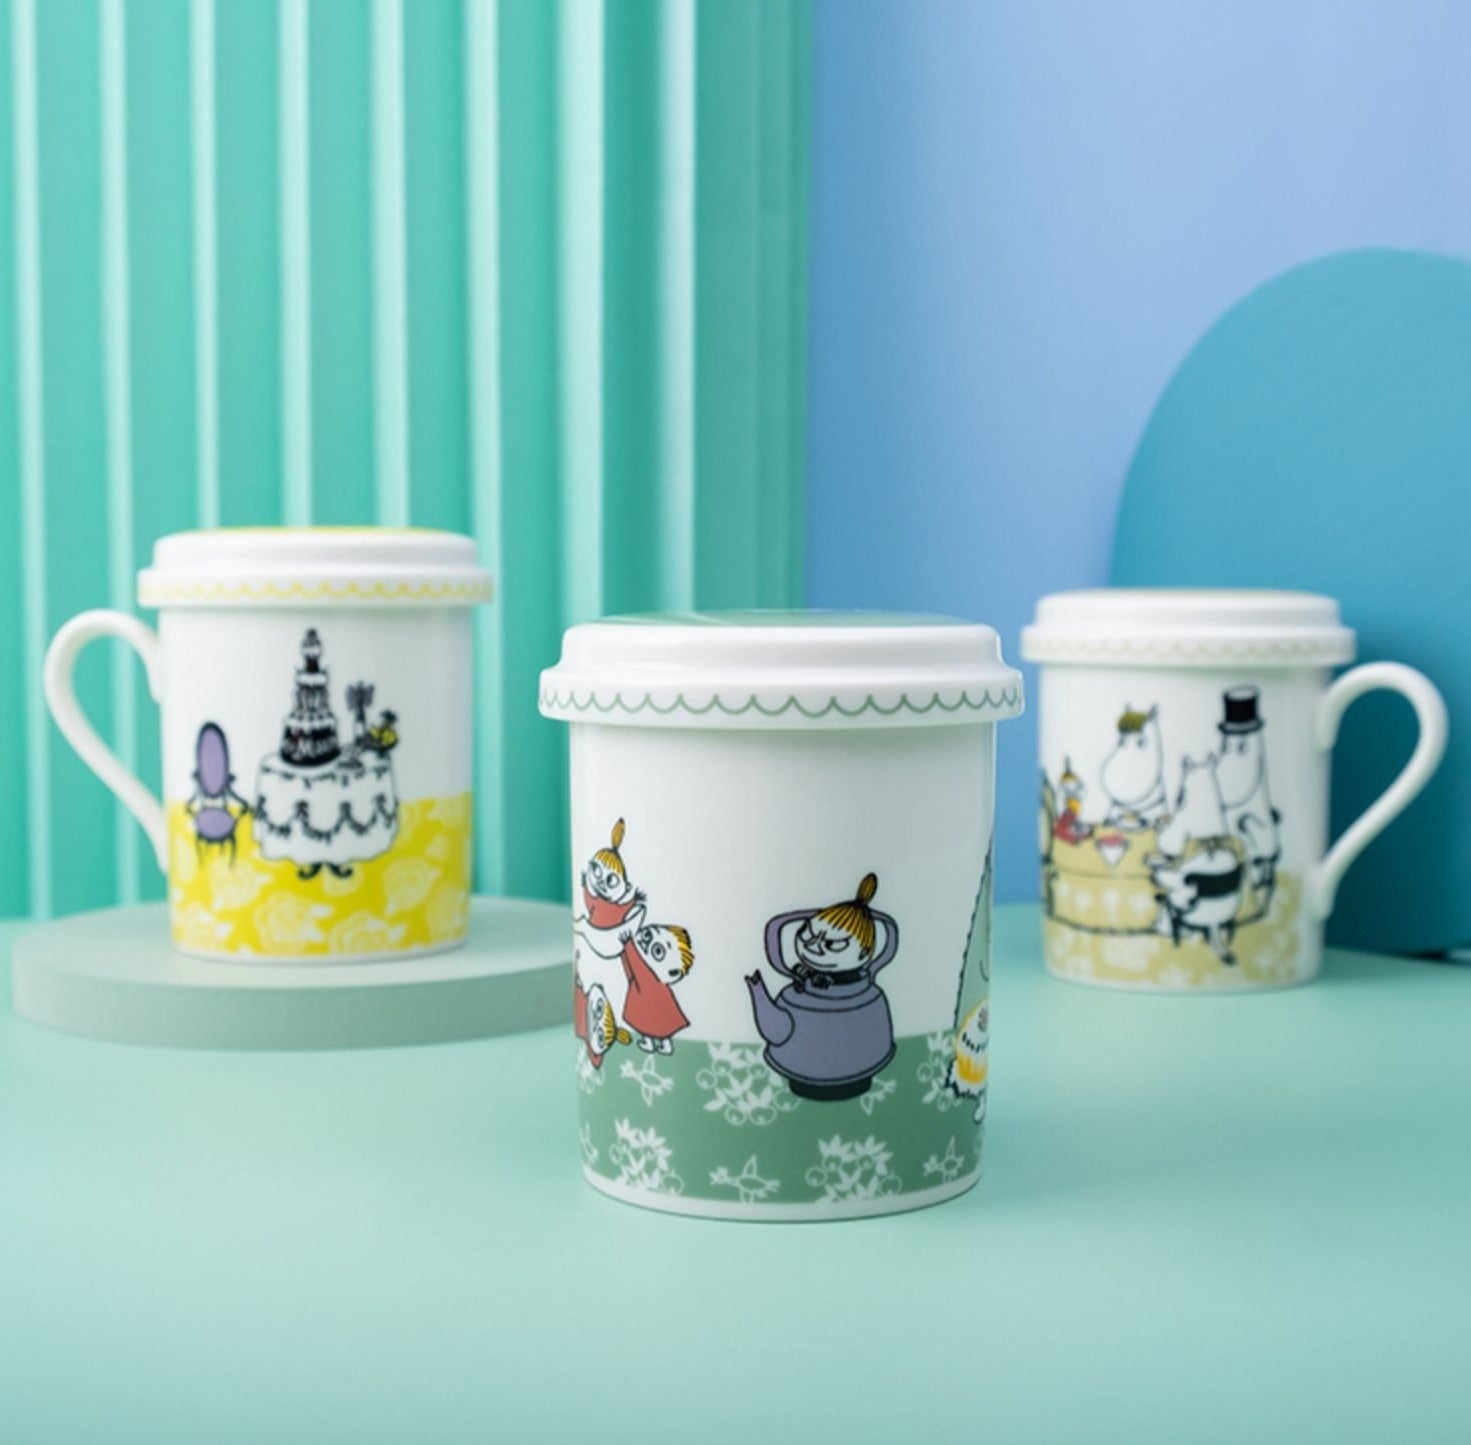 Yamaka Celec Moomin Teamate Deep Steep Tea Mugs with Lid